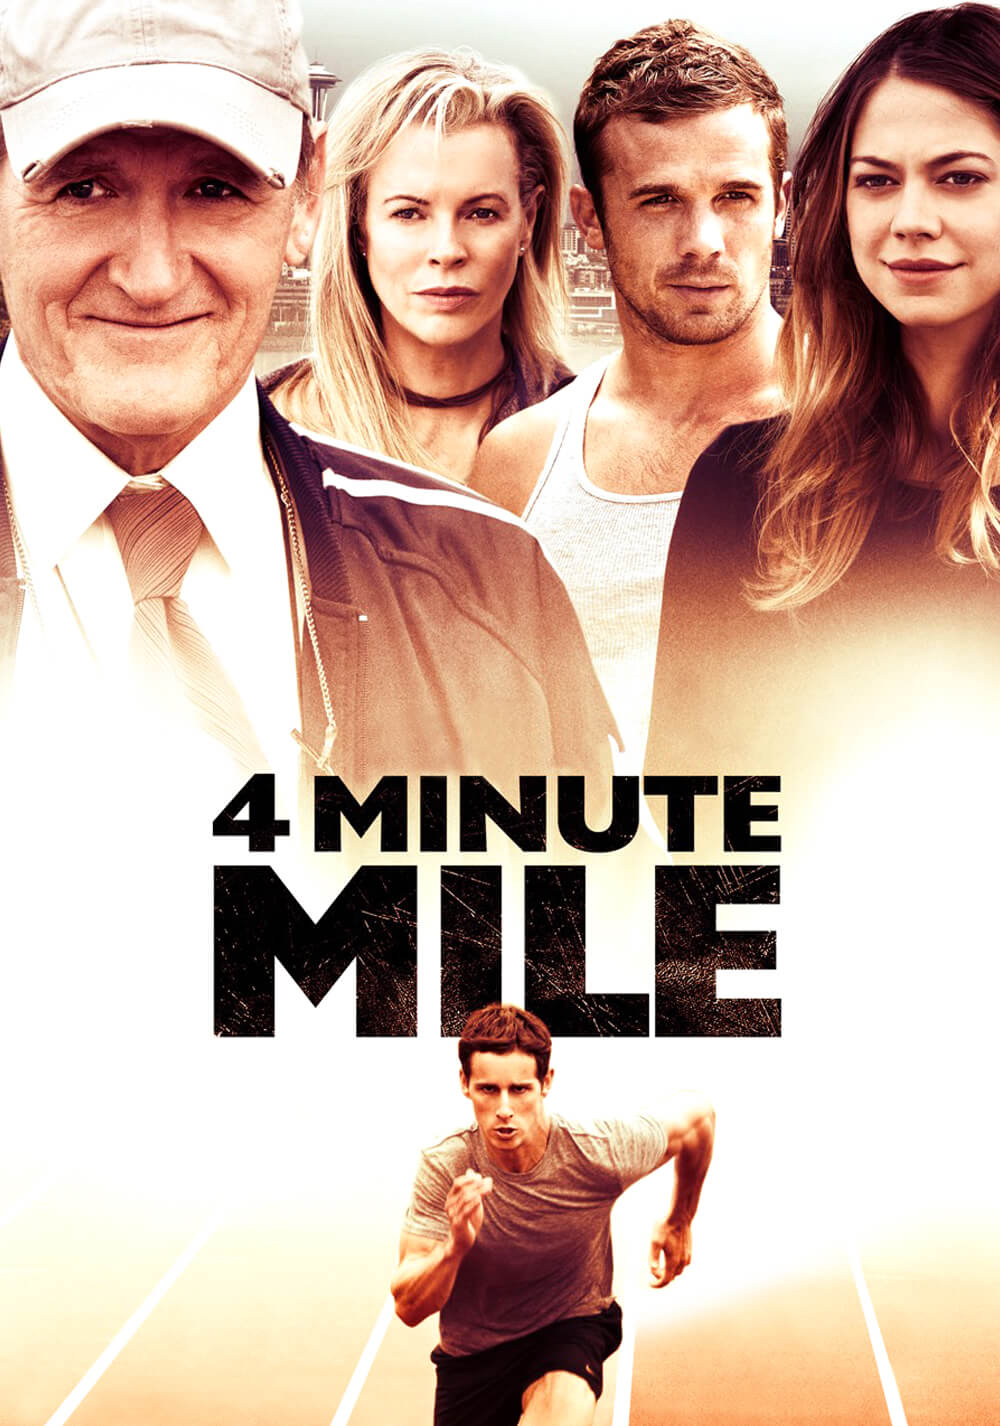 یک مایل در چهار دقیقه (4 Minute Mile)